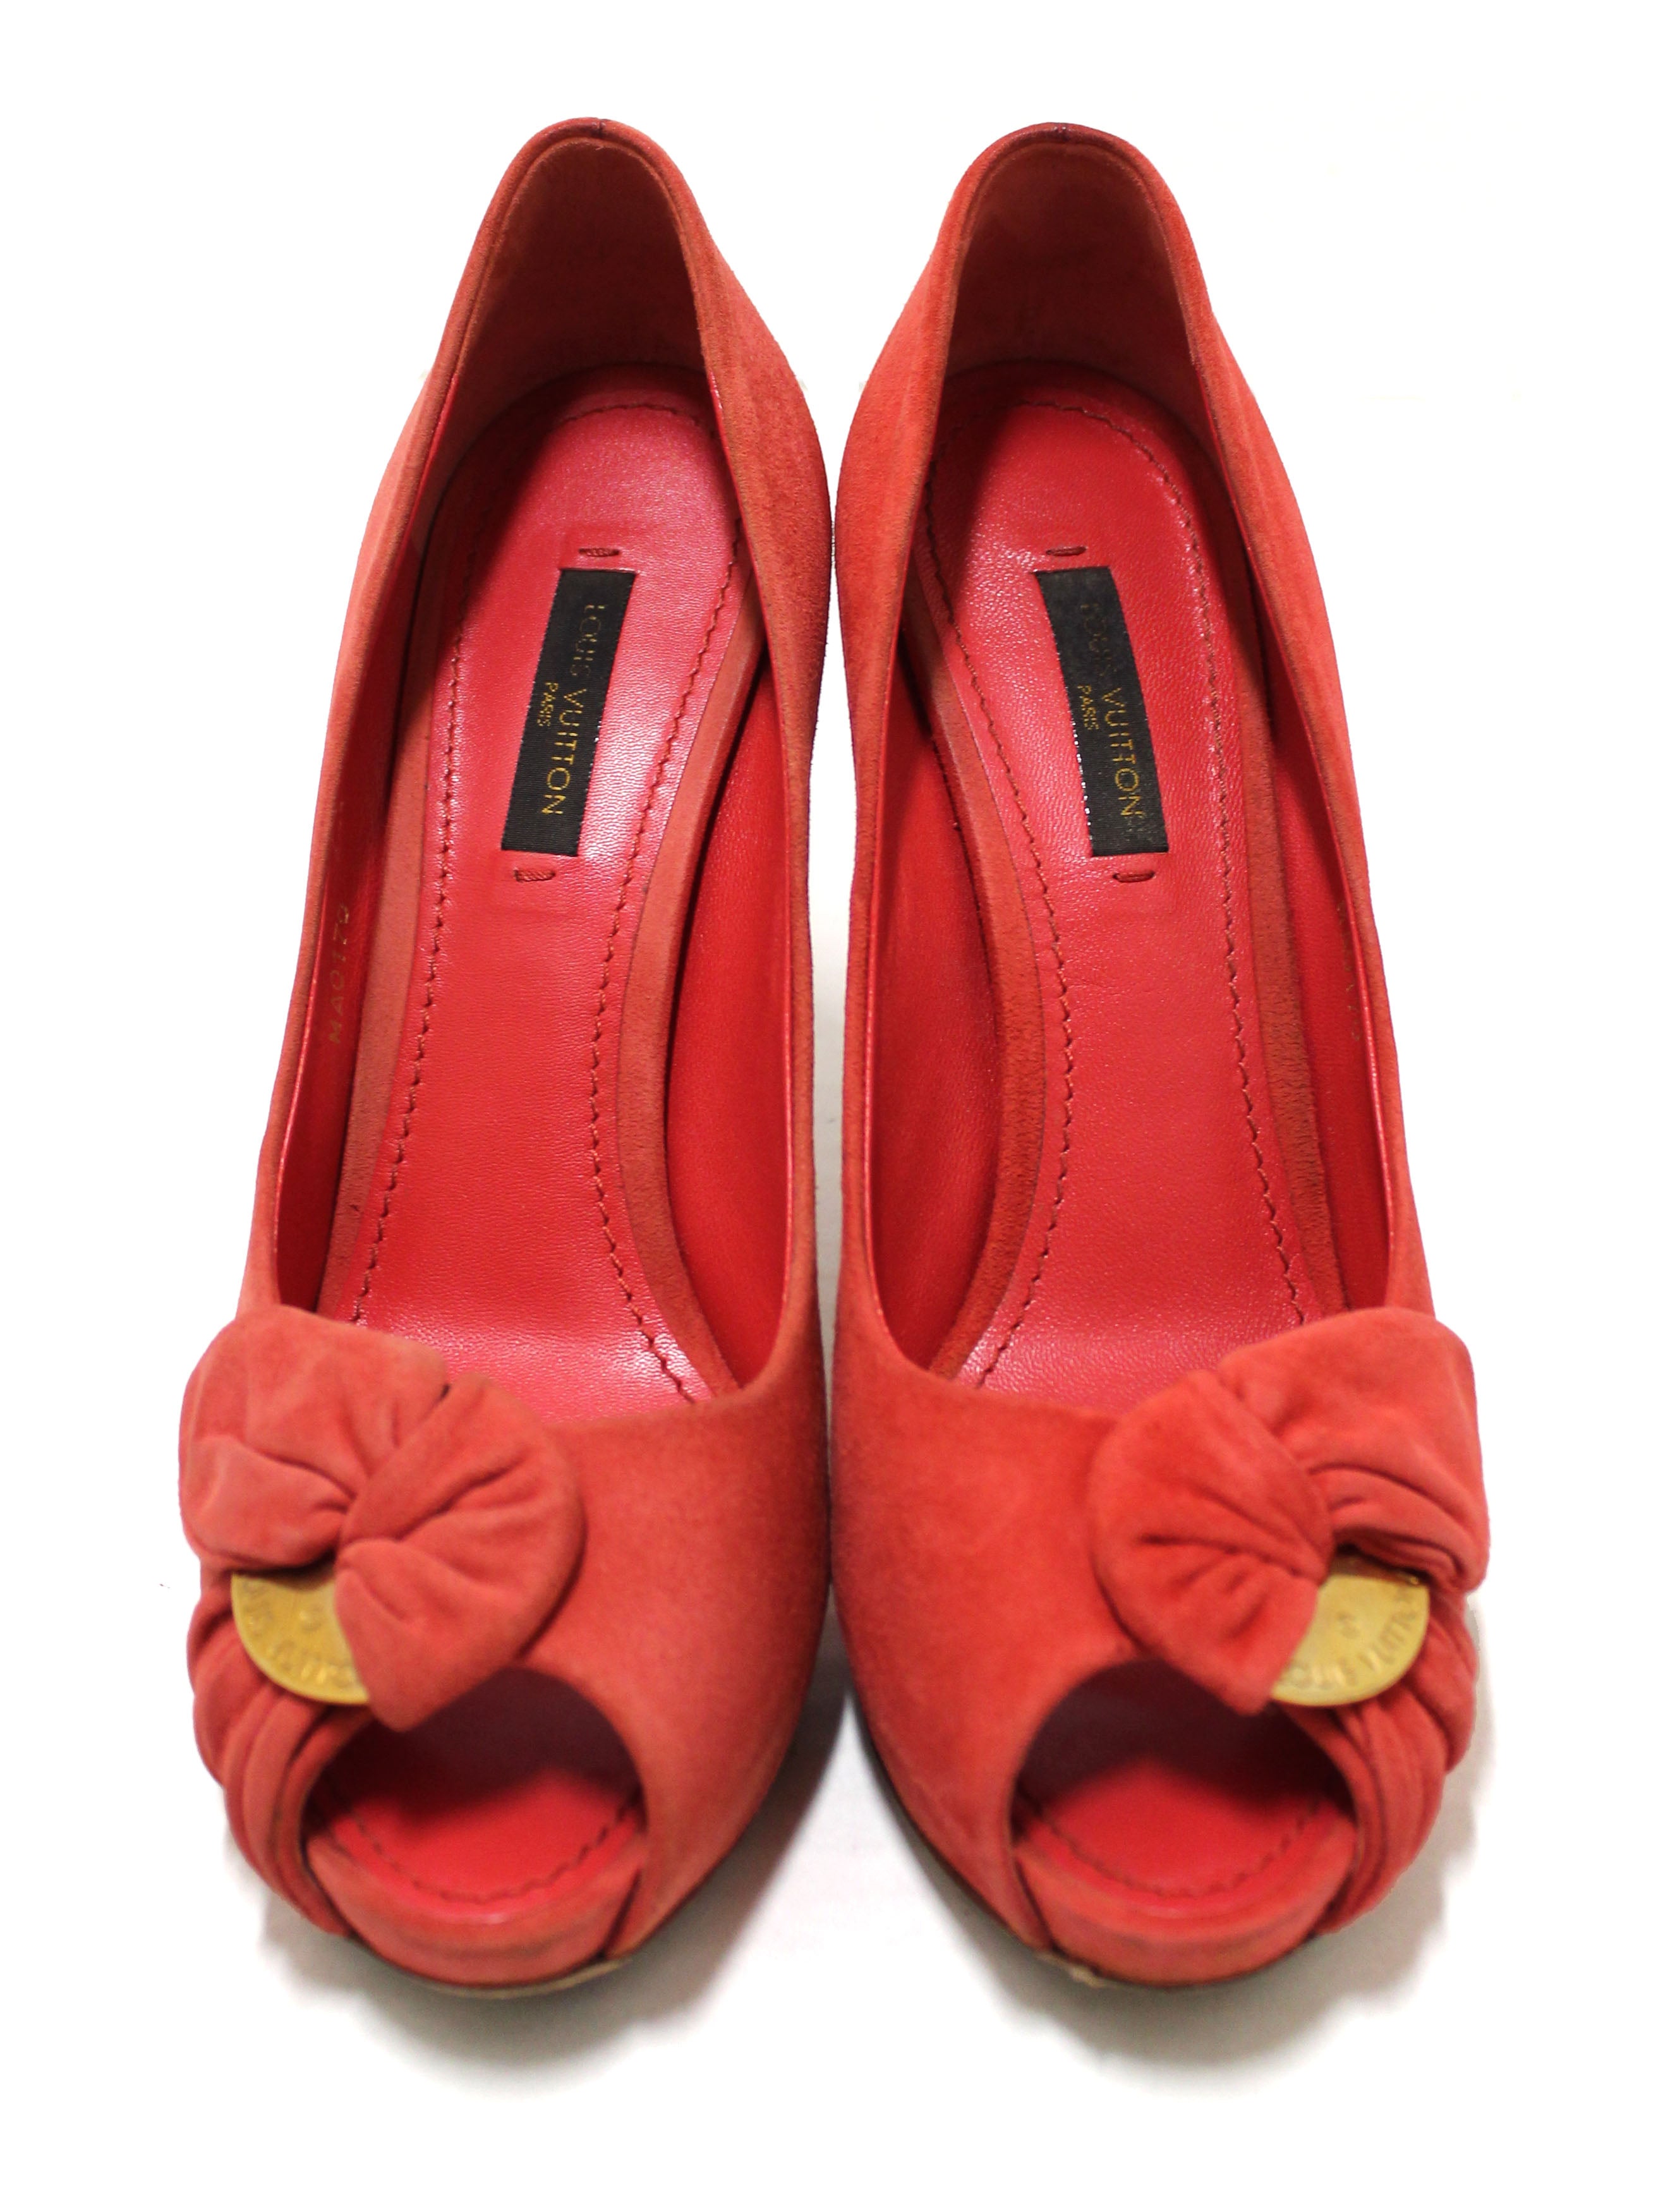 Authentic Louis Vuitton Red Suede Leather Pumps Shoes Size 37 – Paris  Station Shop